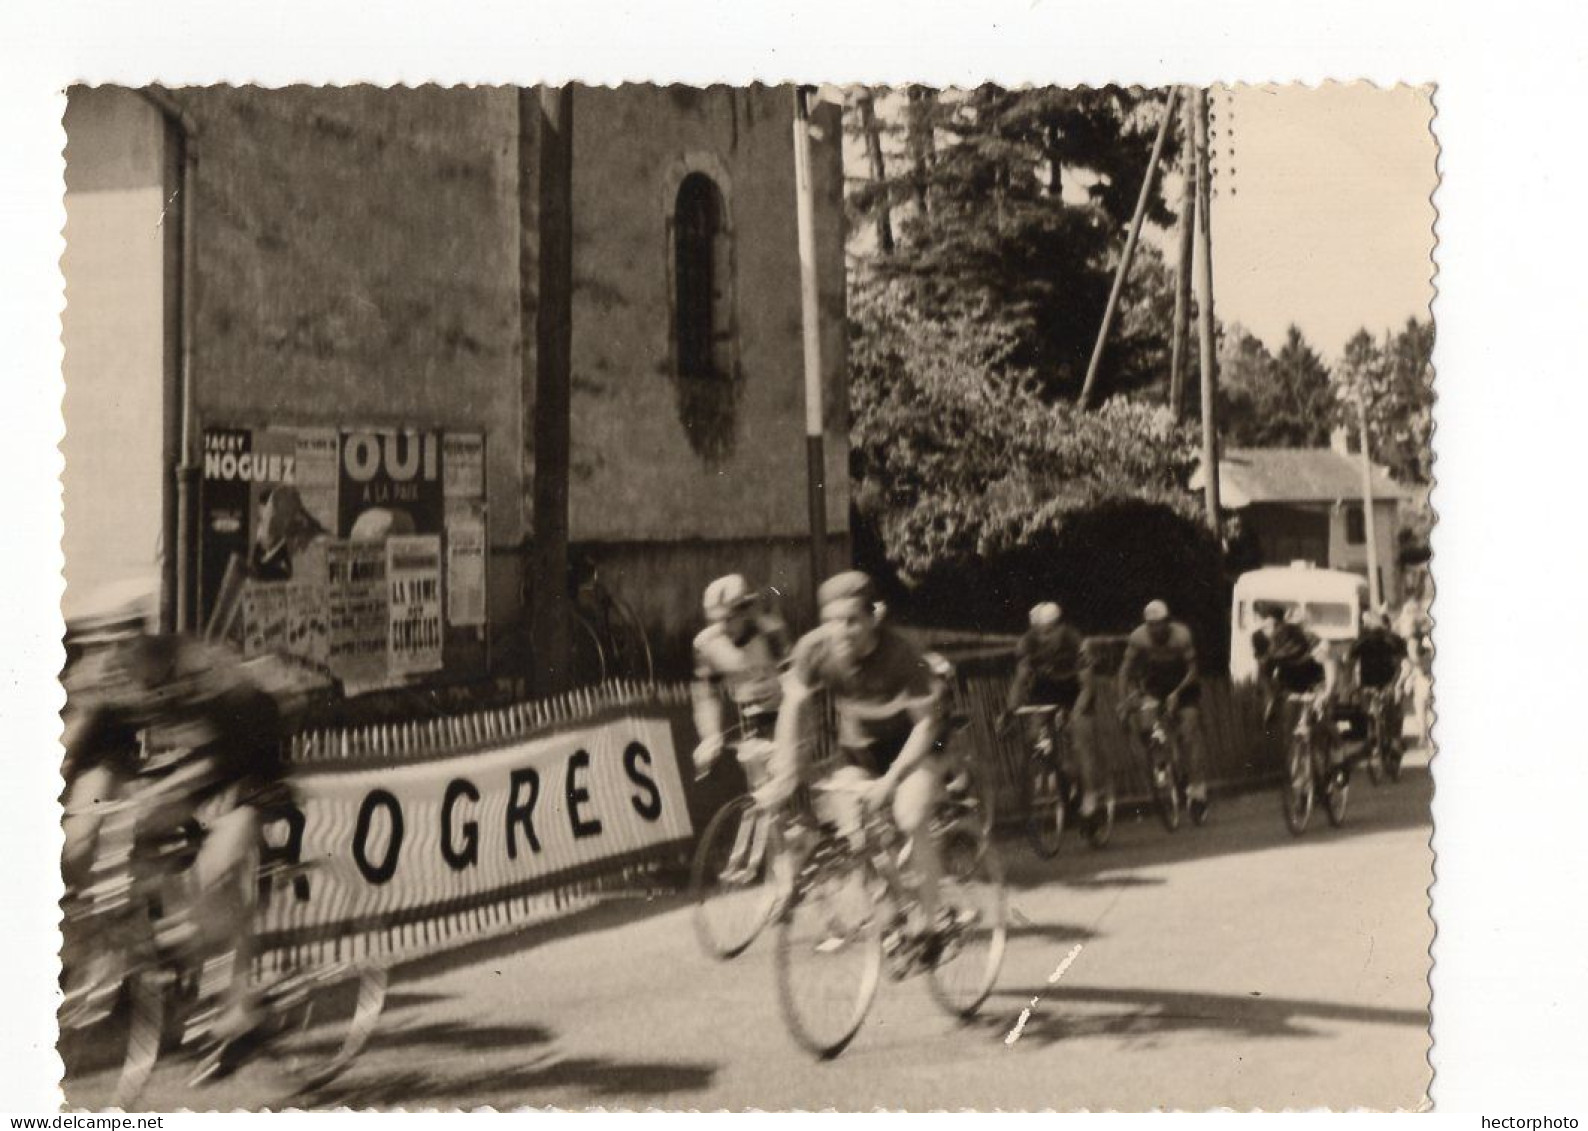 Snapshot Course Velo Cyclisme Coureur Affiche Le Progrès 50s 60s - Cyclisme